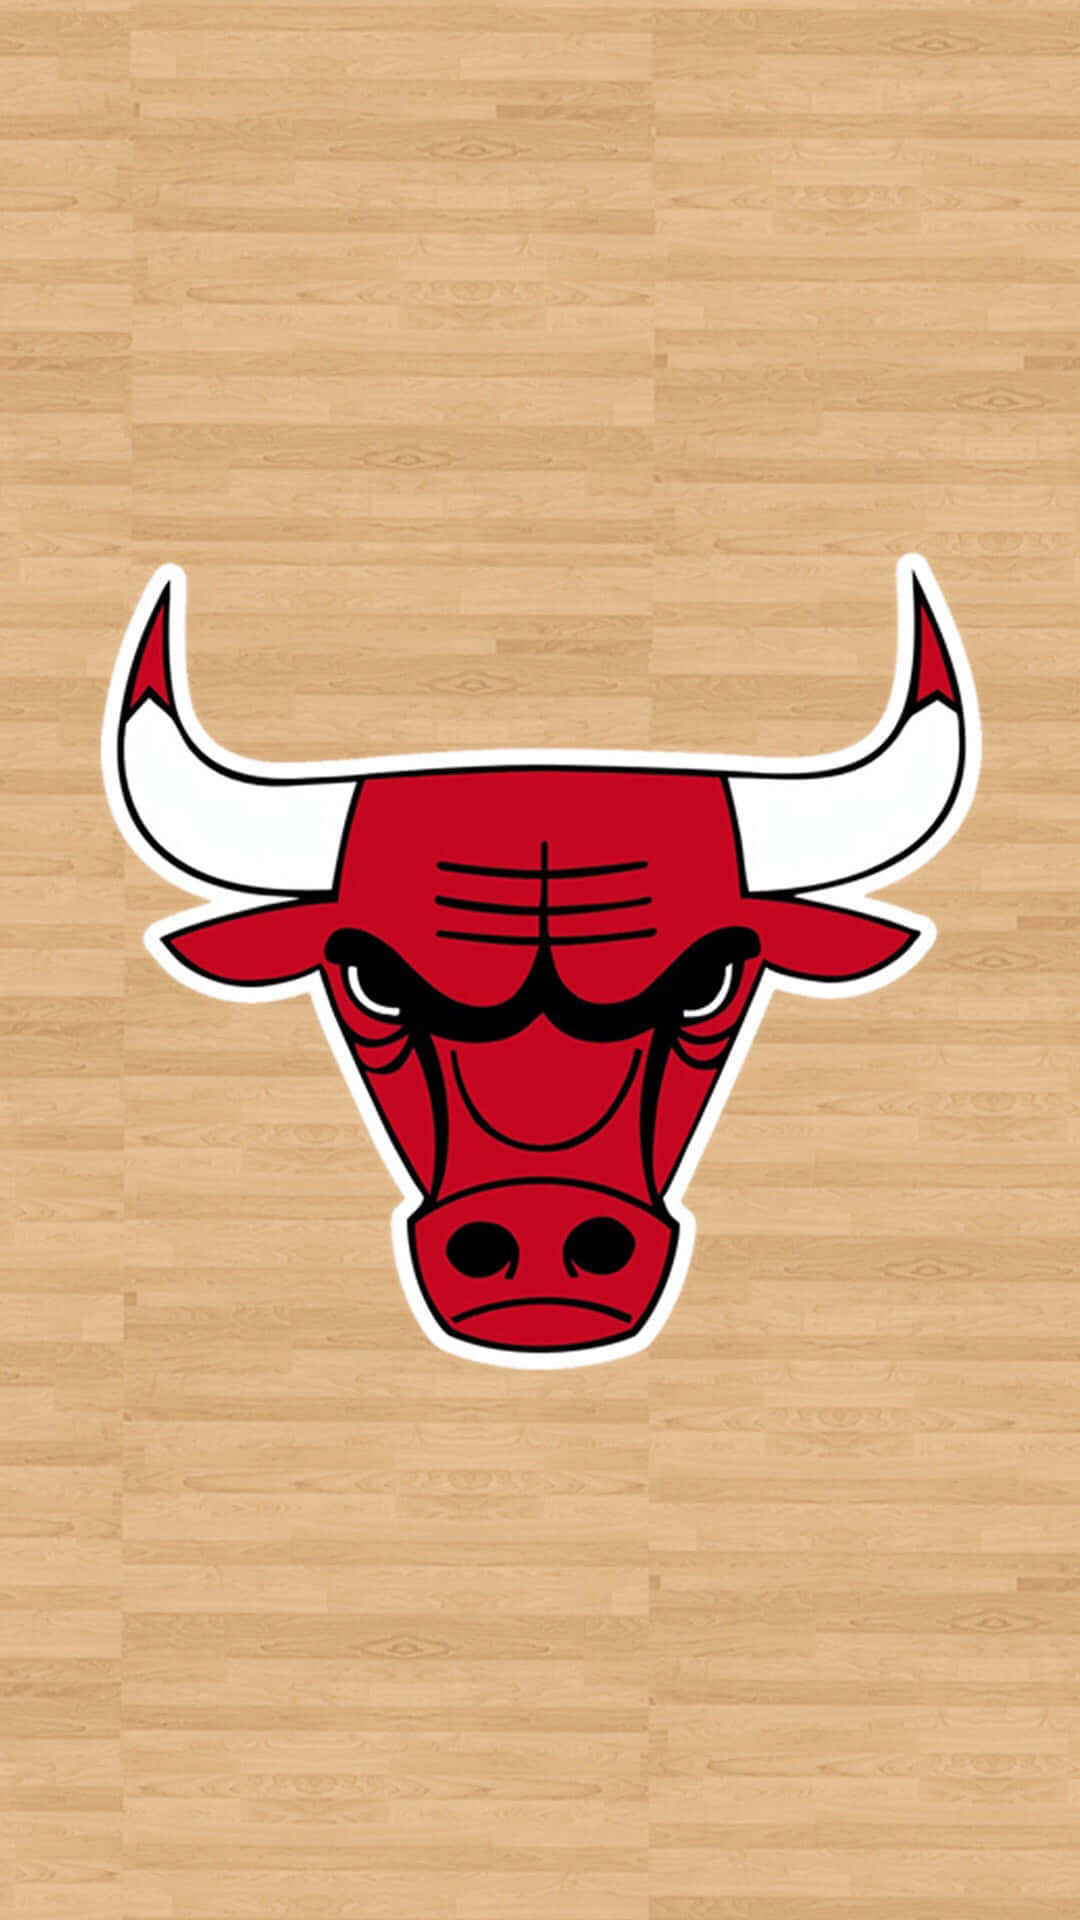 Chicago Bulls Logo Wallpaper Background